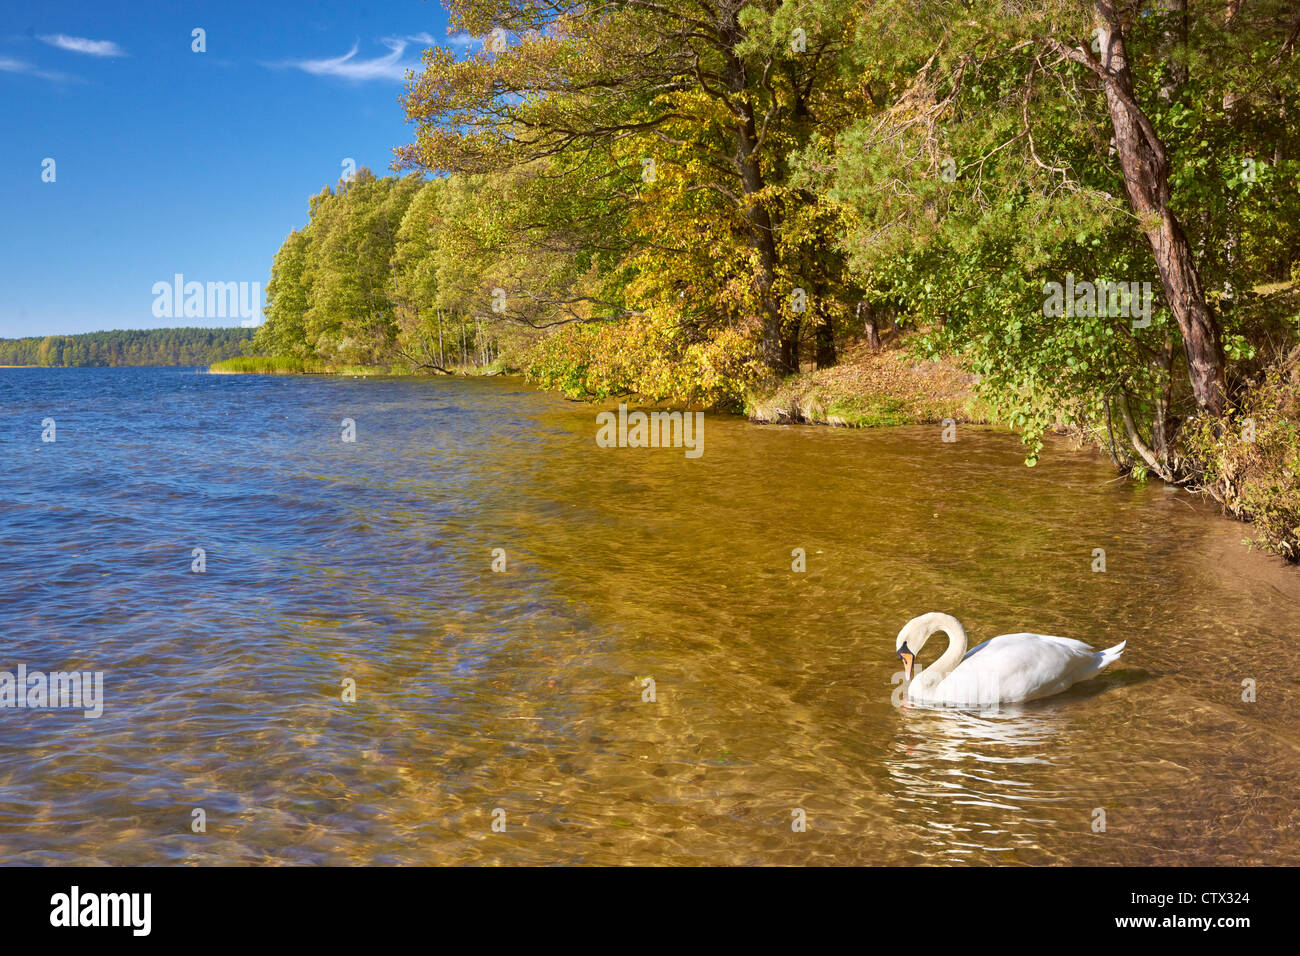 White Lake, Augustow, Poland, Europe Stock Photo